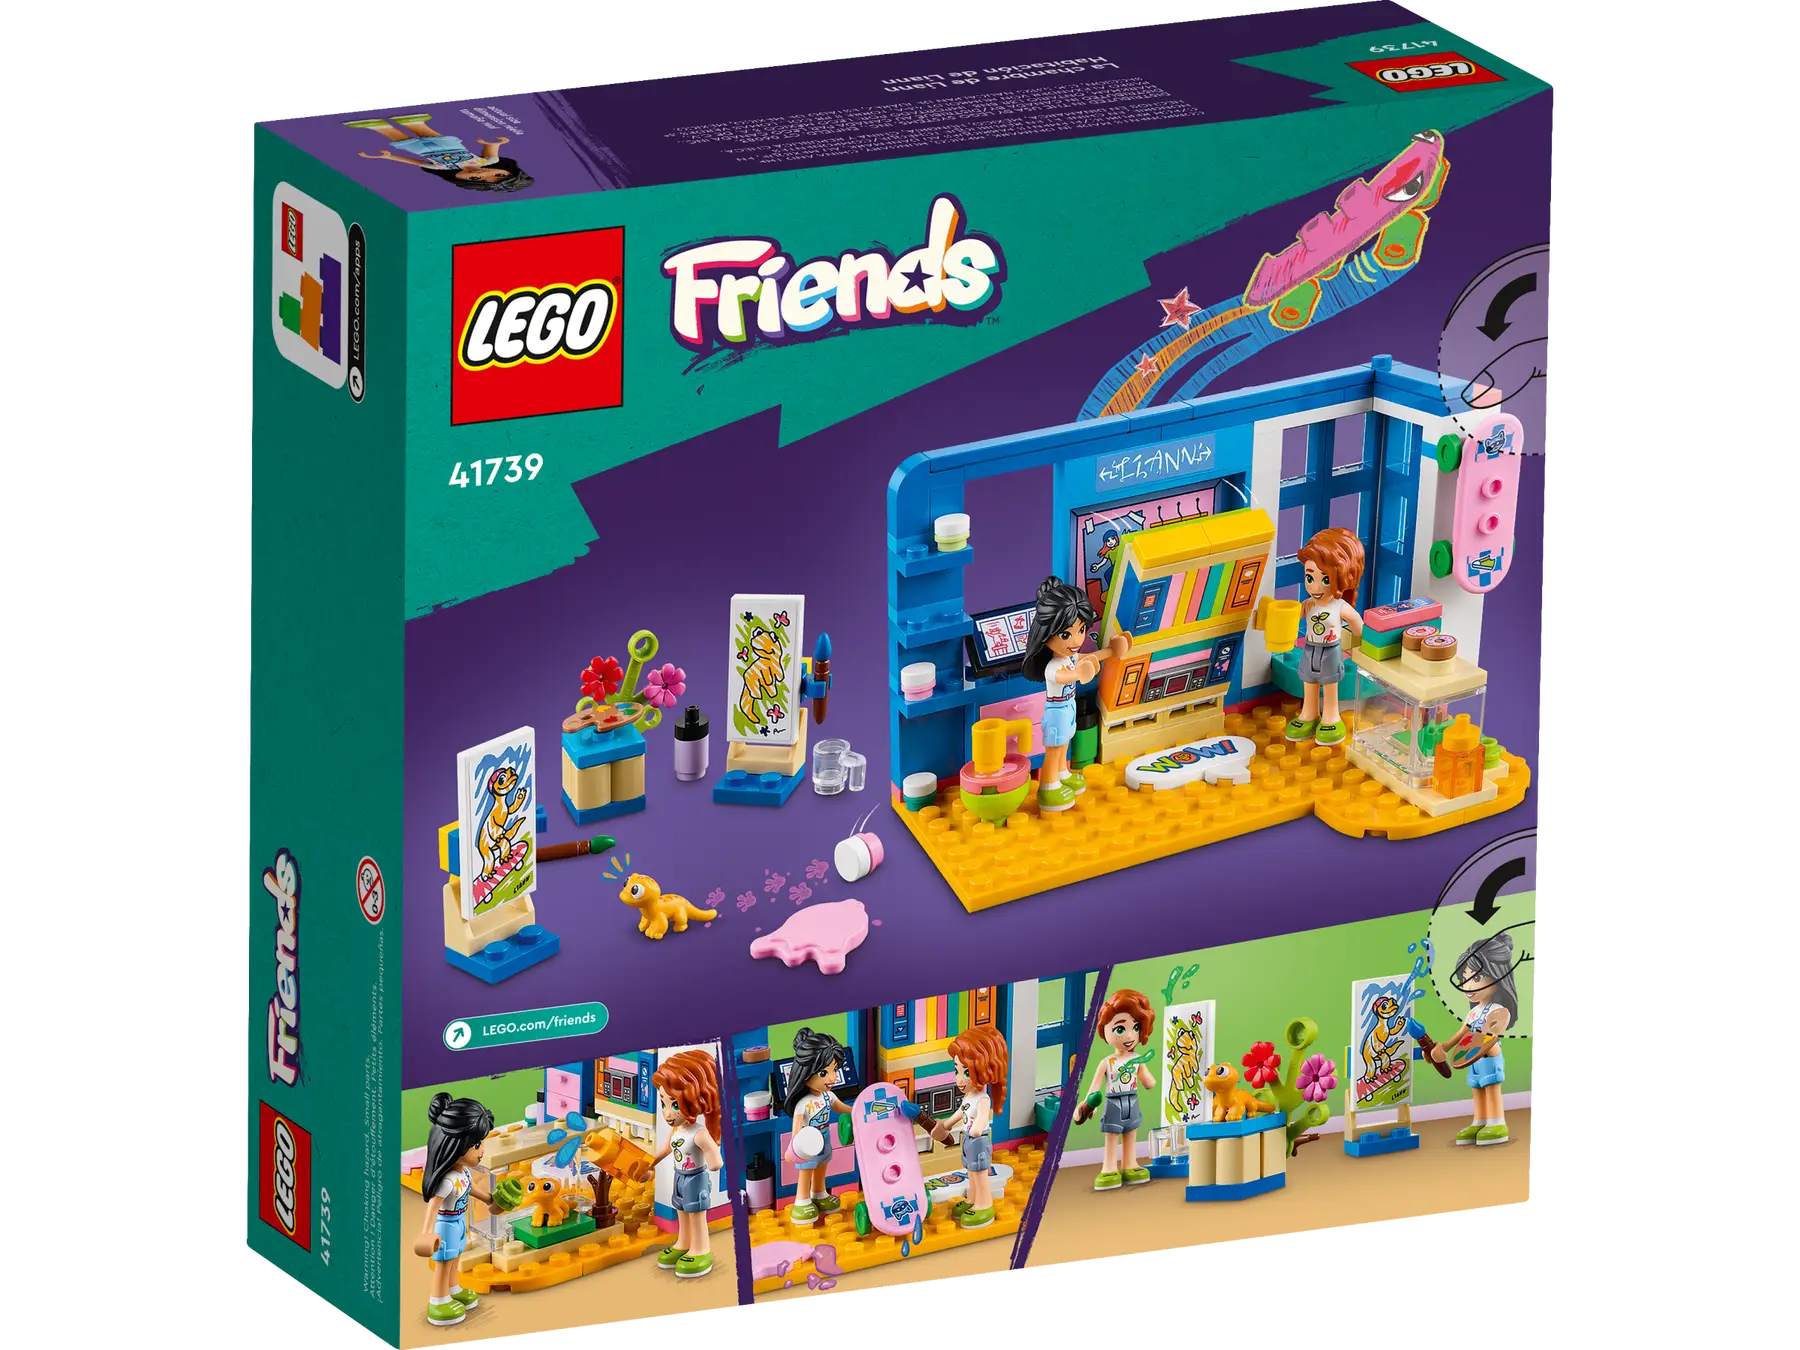 Lego Friends - Liann's Room